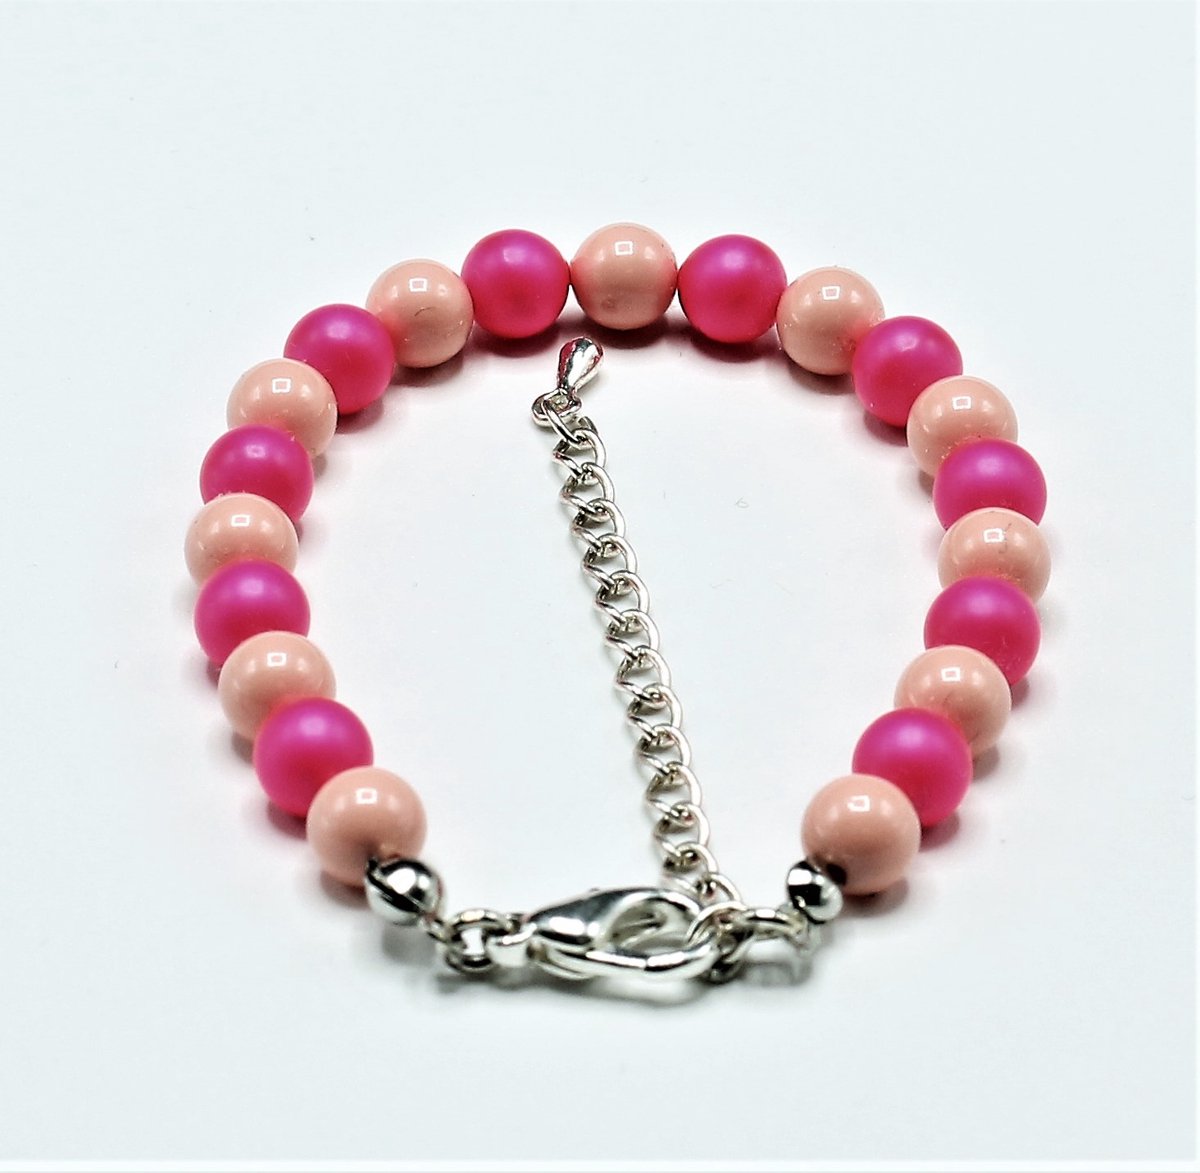 1 Parel Armbanden Made With Pearls From Swarovski rose en pink maat 16,18,19 cm verstelbaar